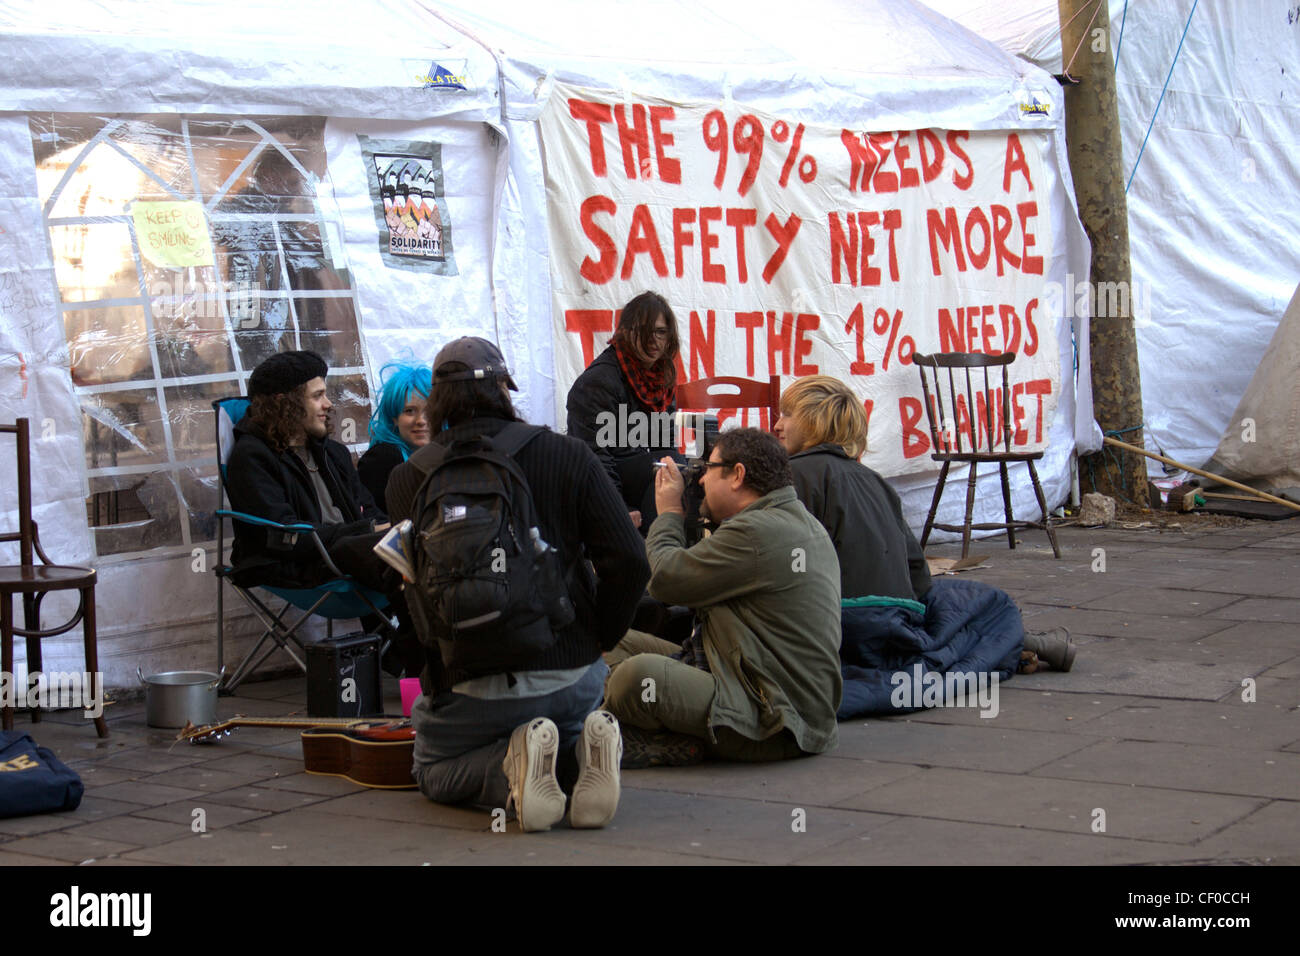 Les manifestants ont campé à l'extérieur de la Cathédrale St Paul, London - fait partie de la campagne d'Occupy London contre la cupidité des entreprises Banque D'Images